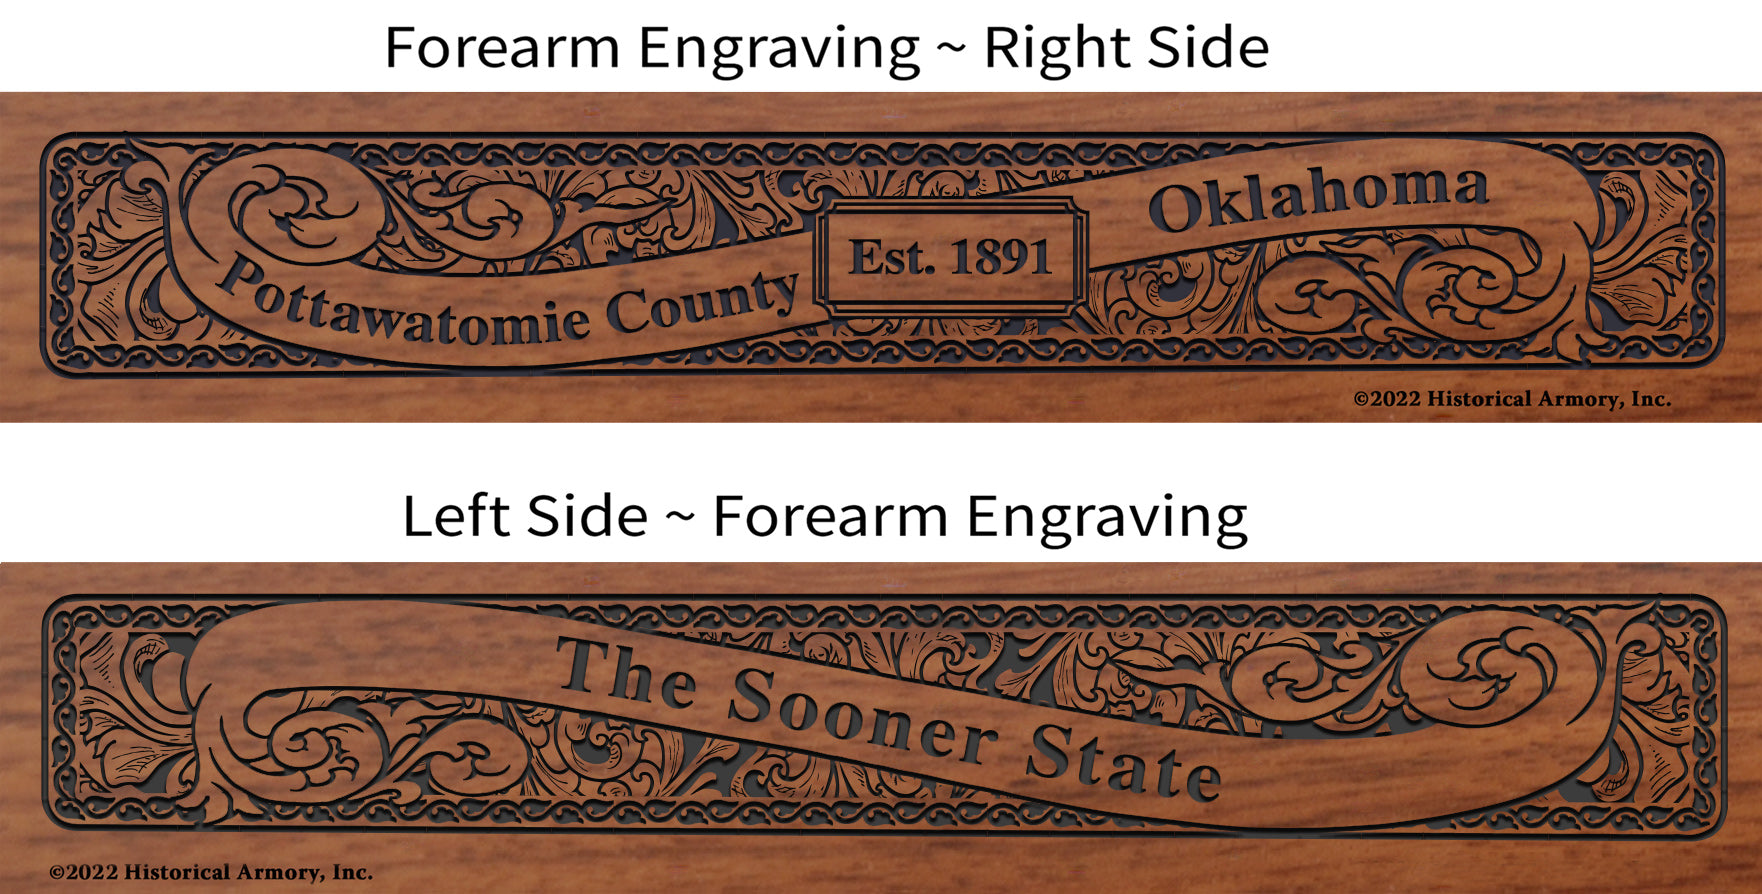 Pottawatomie County Oklahoma Engraved Rifle Forearm